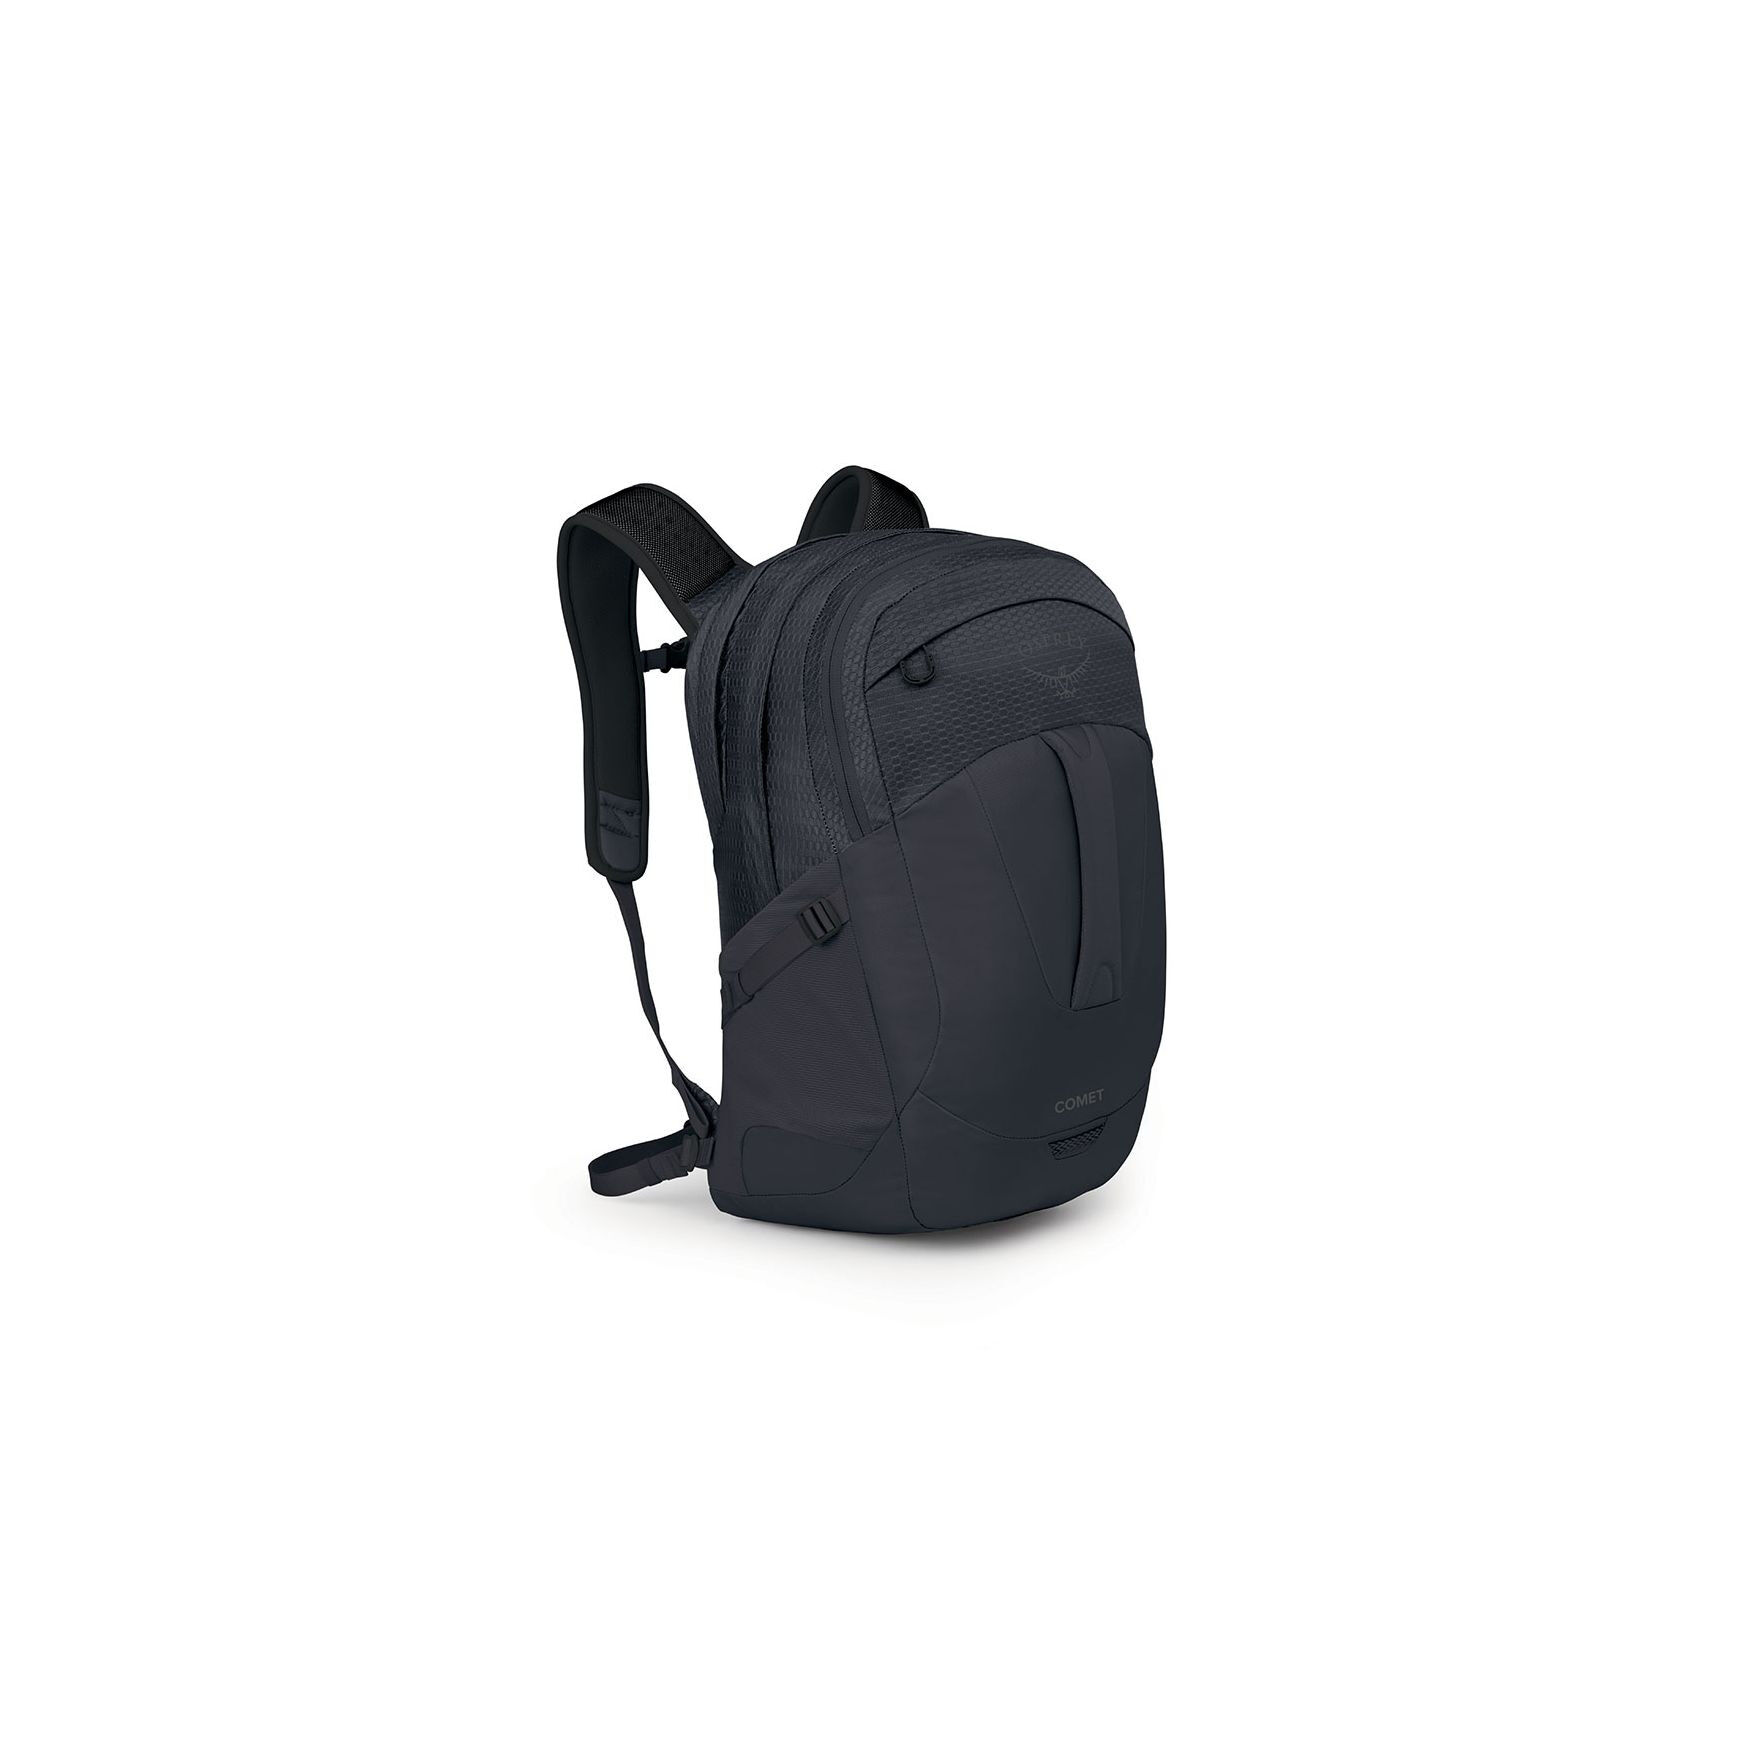 Osprey Comet - Walking backpack | Hardloop